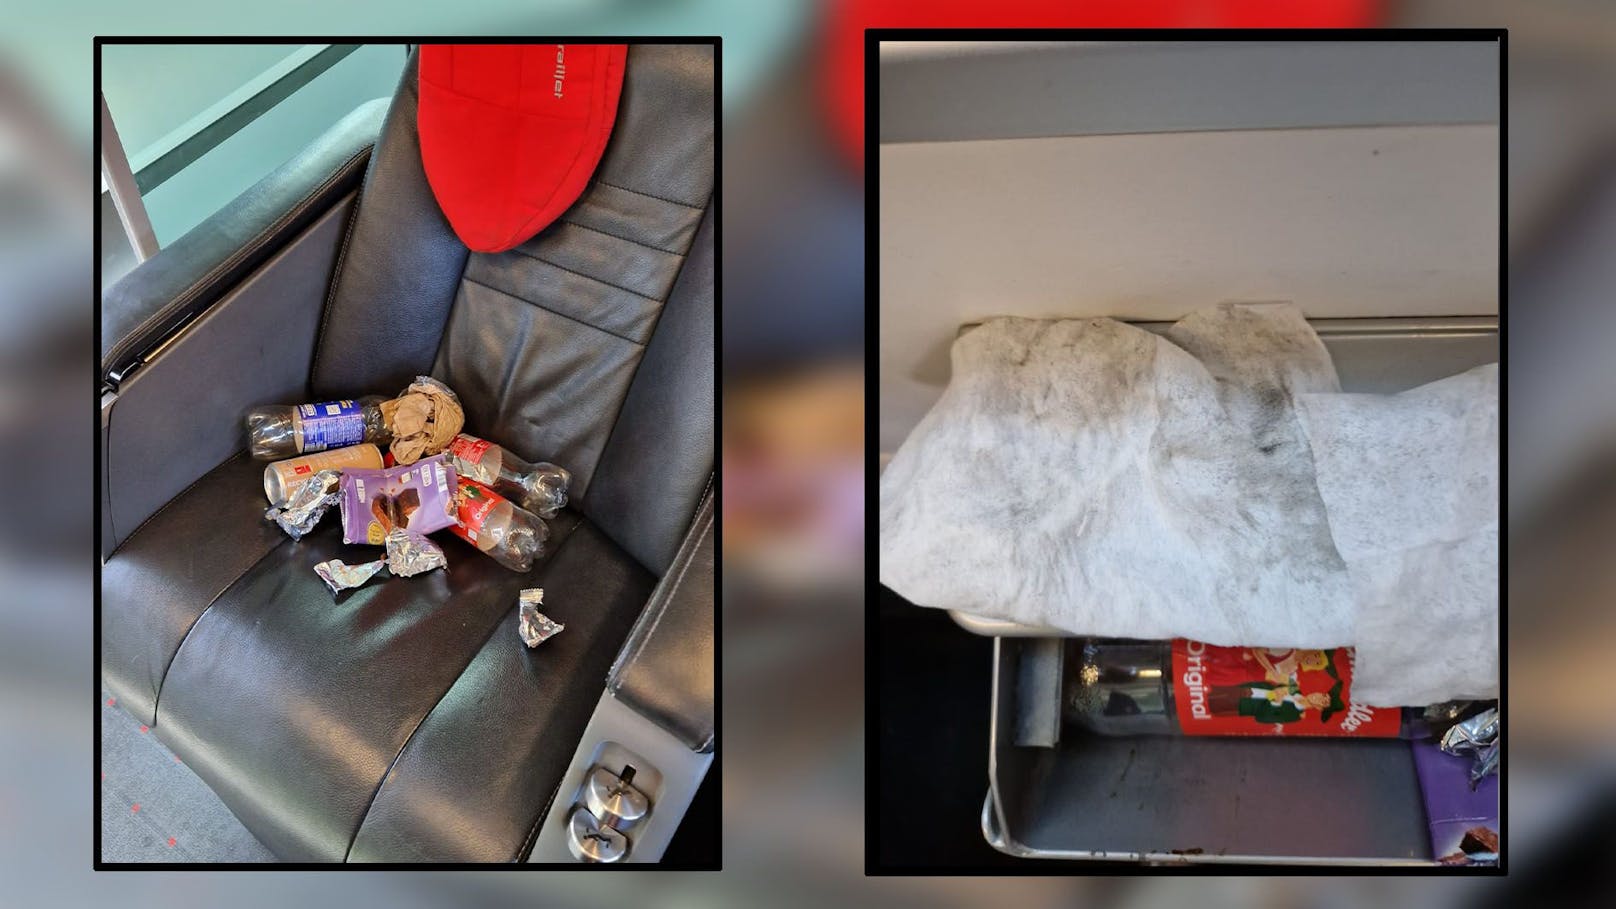 "Die Business Class im Railjet glich einer Müllhalde", beschwert sich Beata.